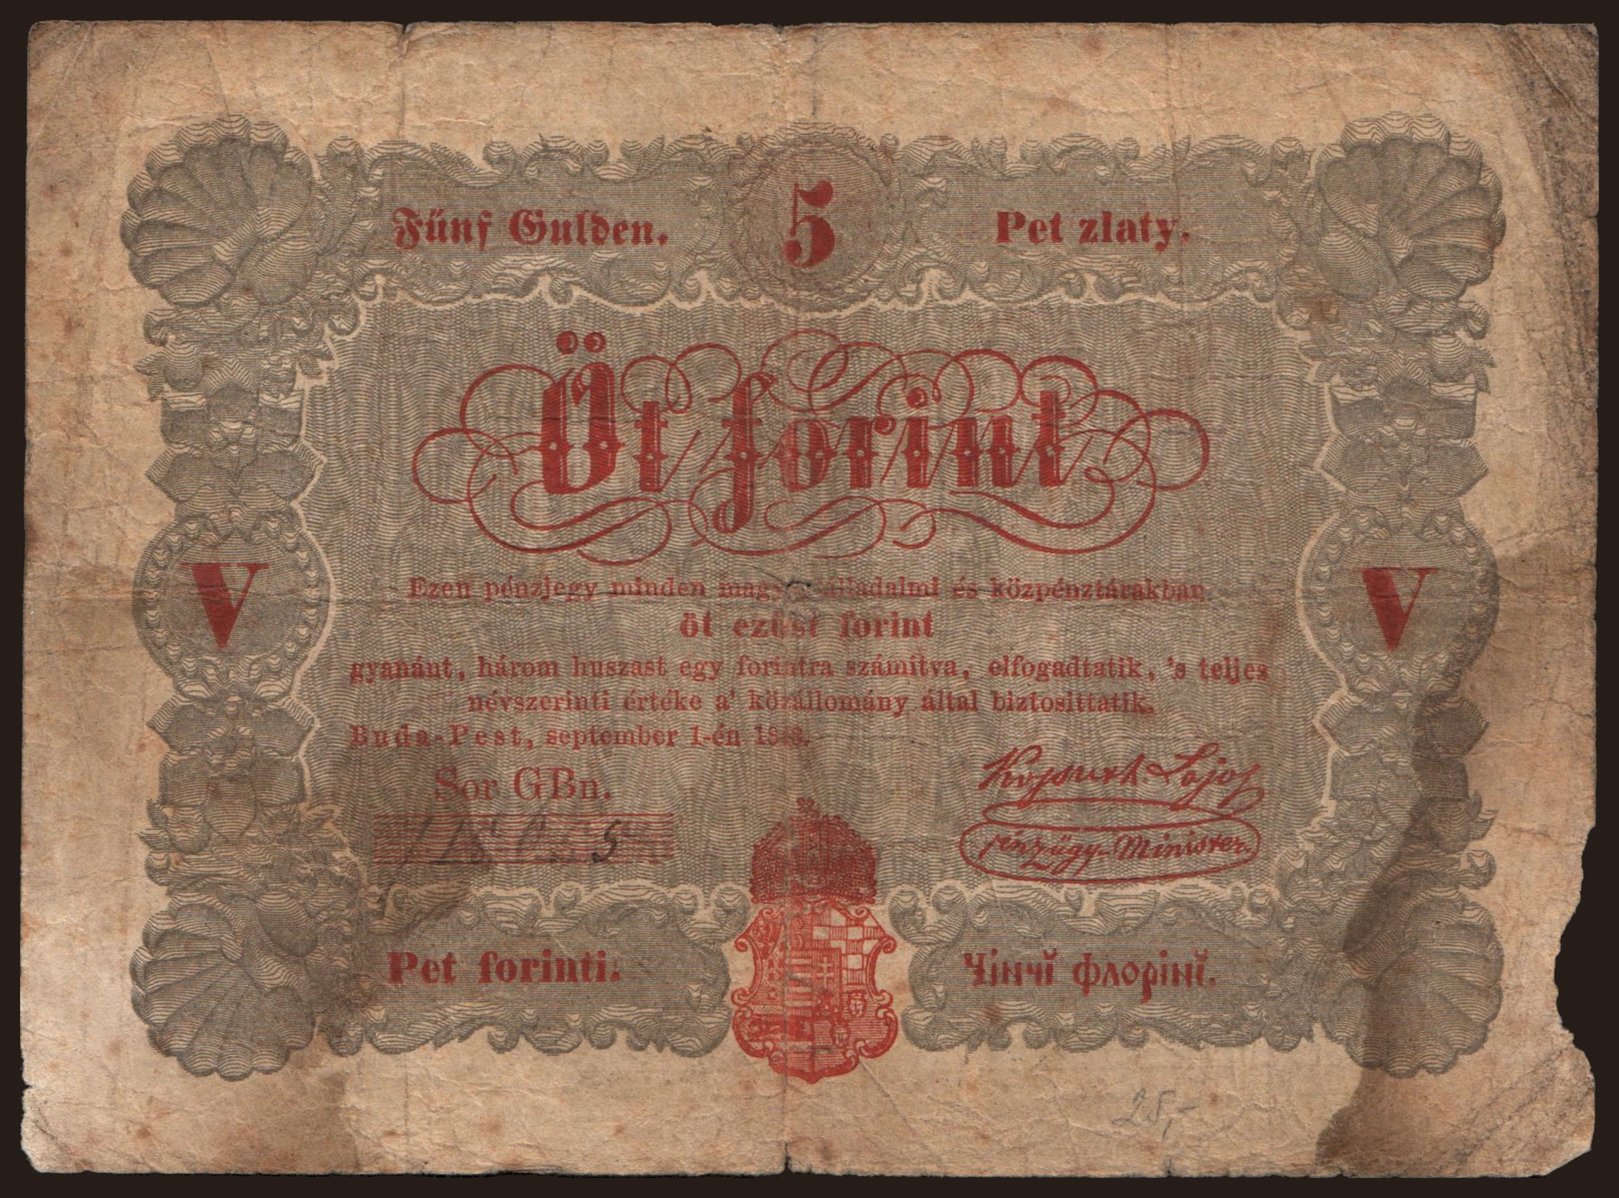 5 forint, 1848